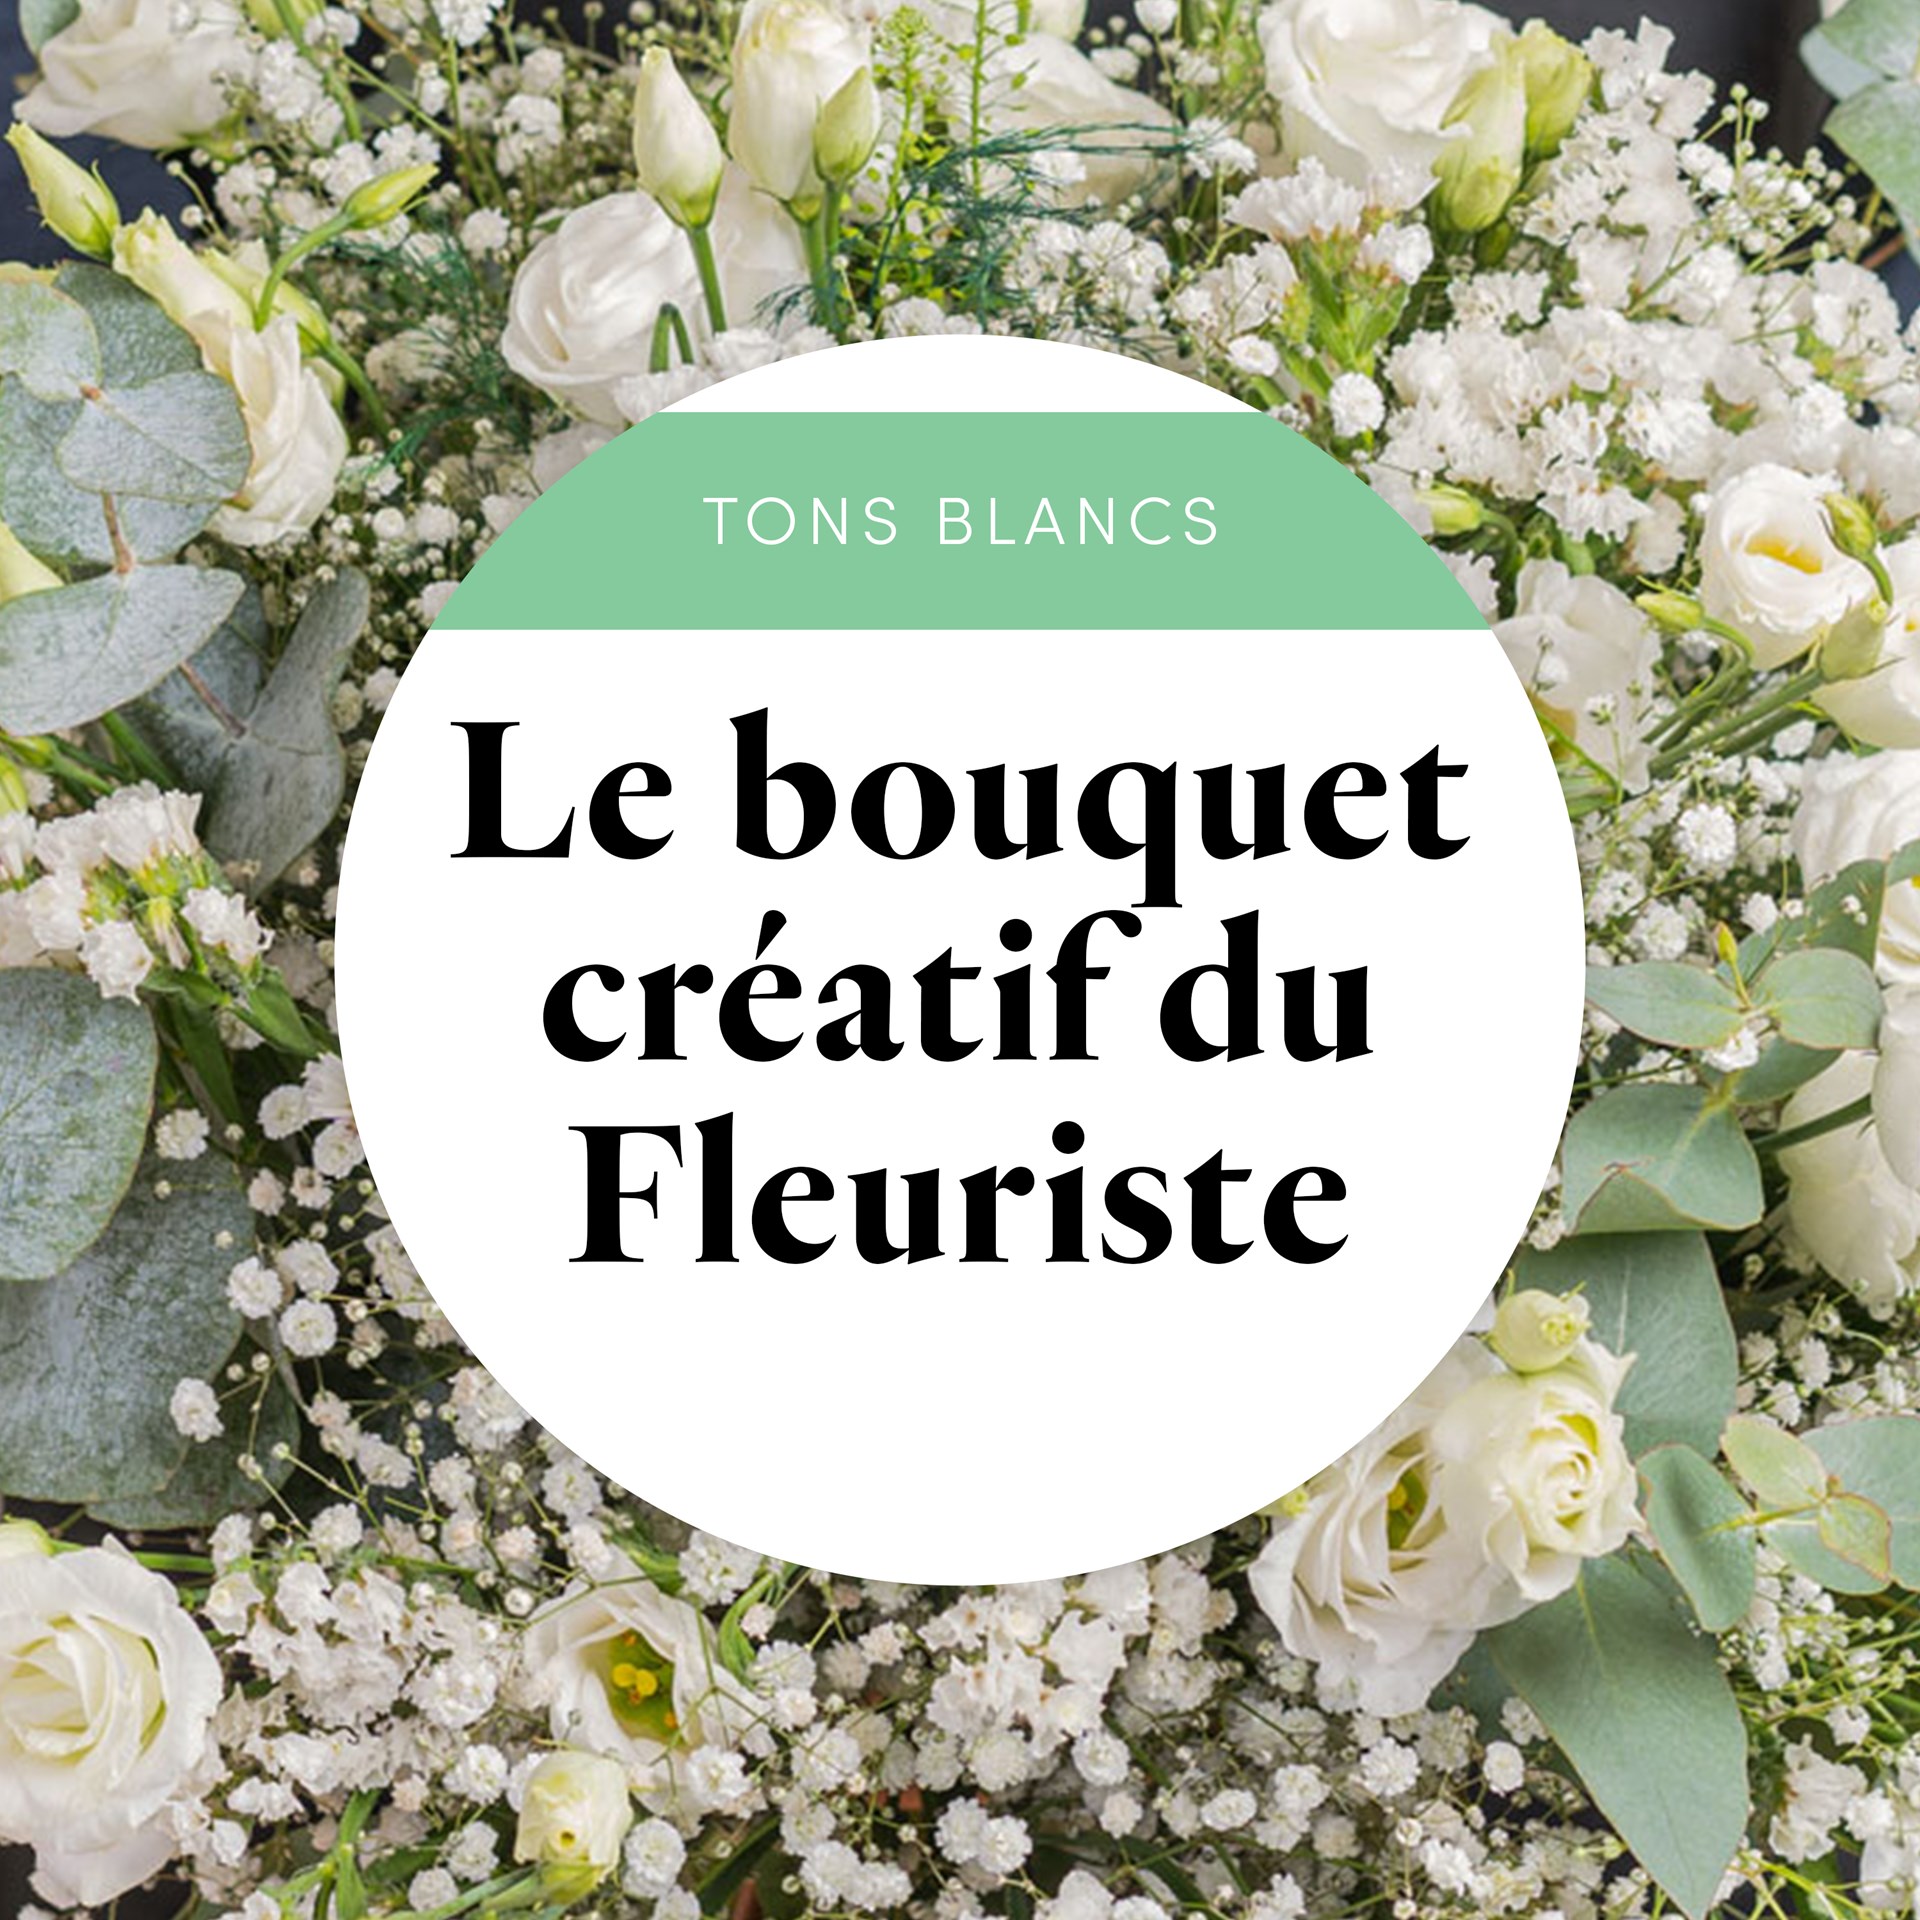 product image for Bouquet du fleuriste Blanc